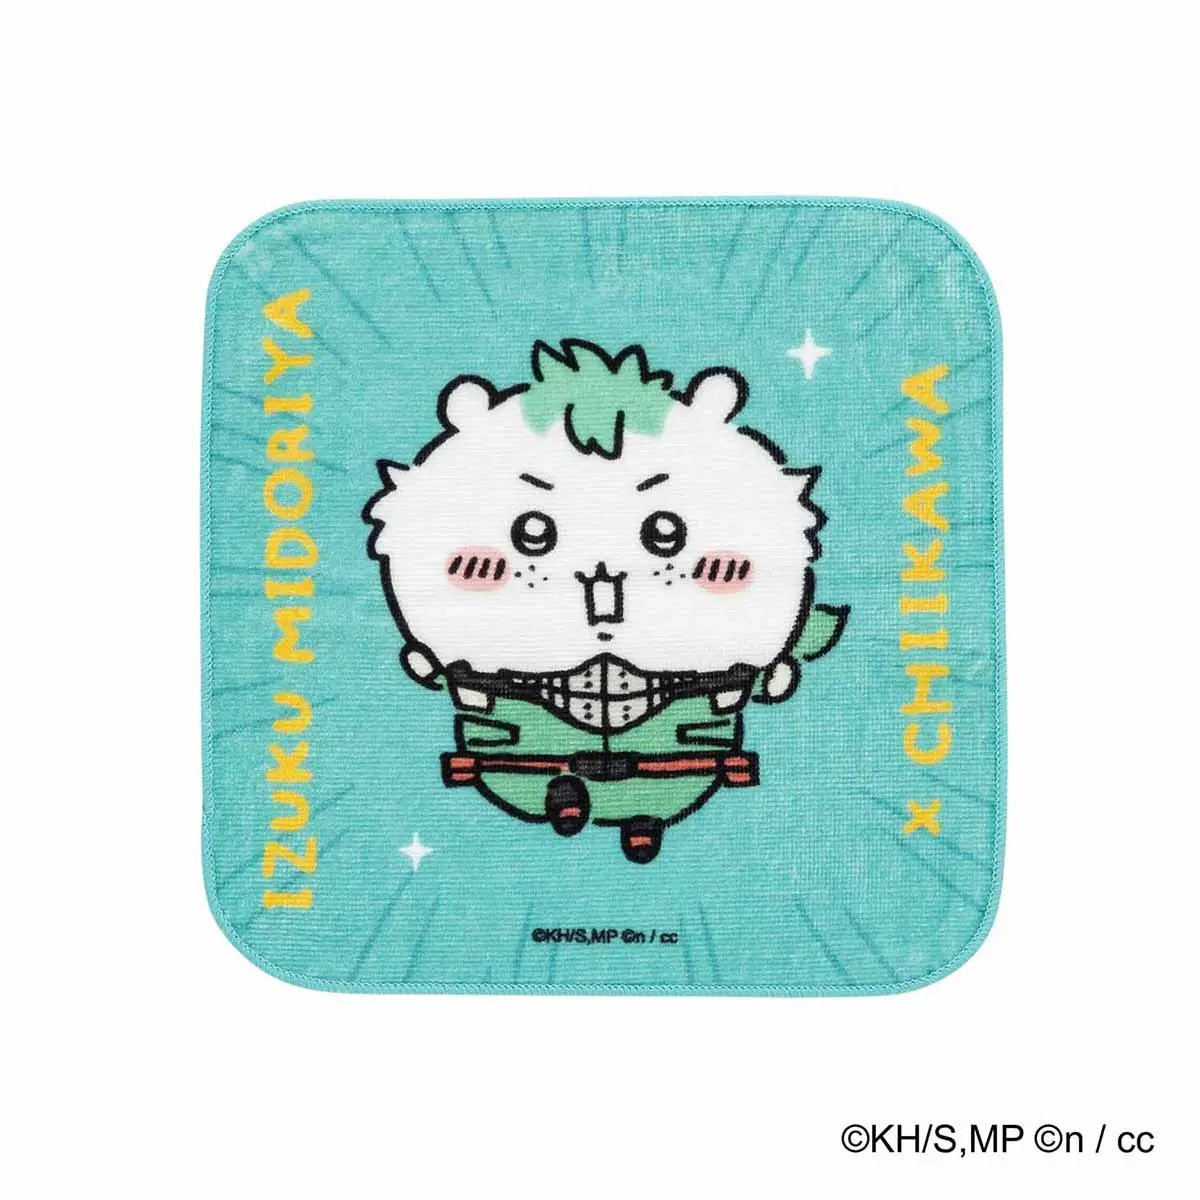 Towels - Chiikawa / Chiikawa